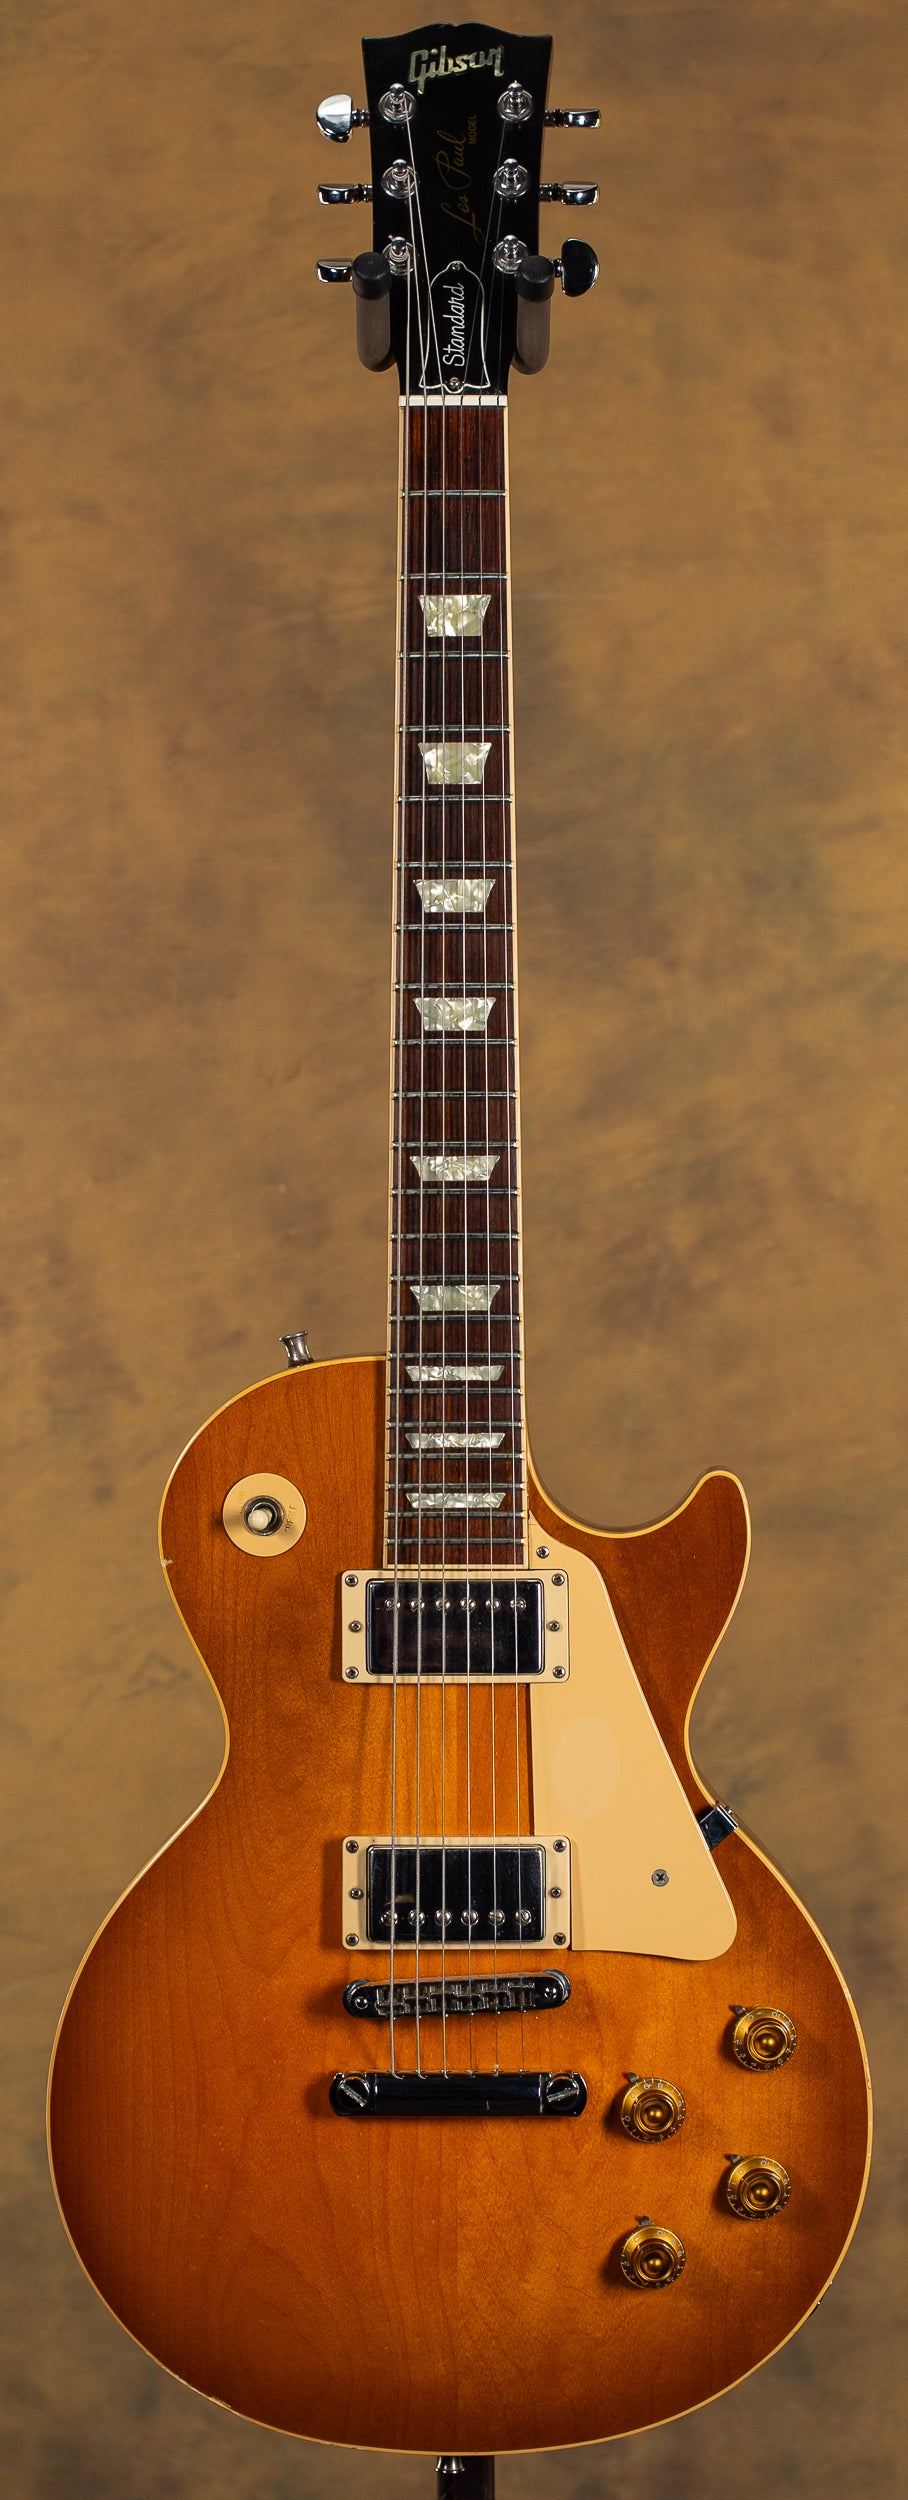 2000 Gibson Les Paul Standard - Willcutt Guitars